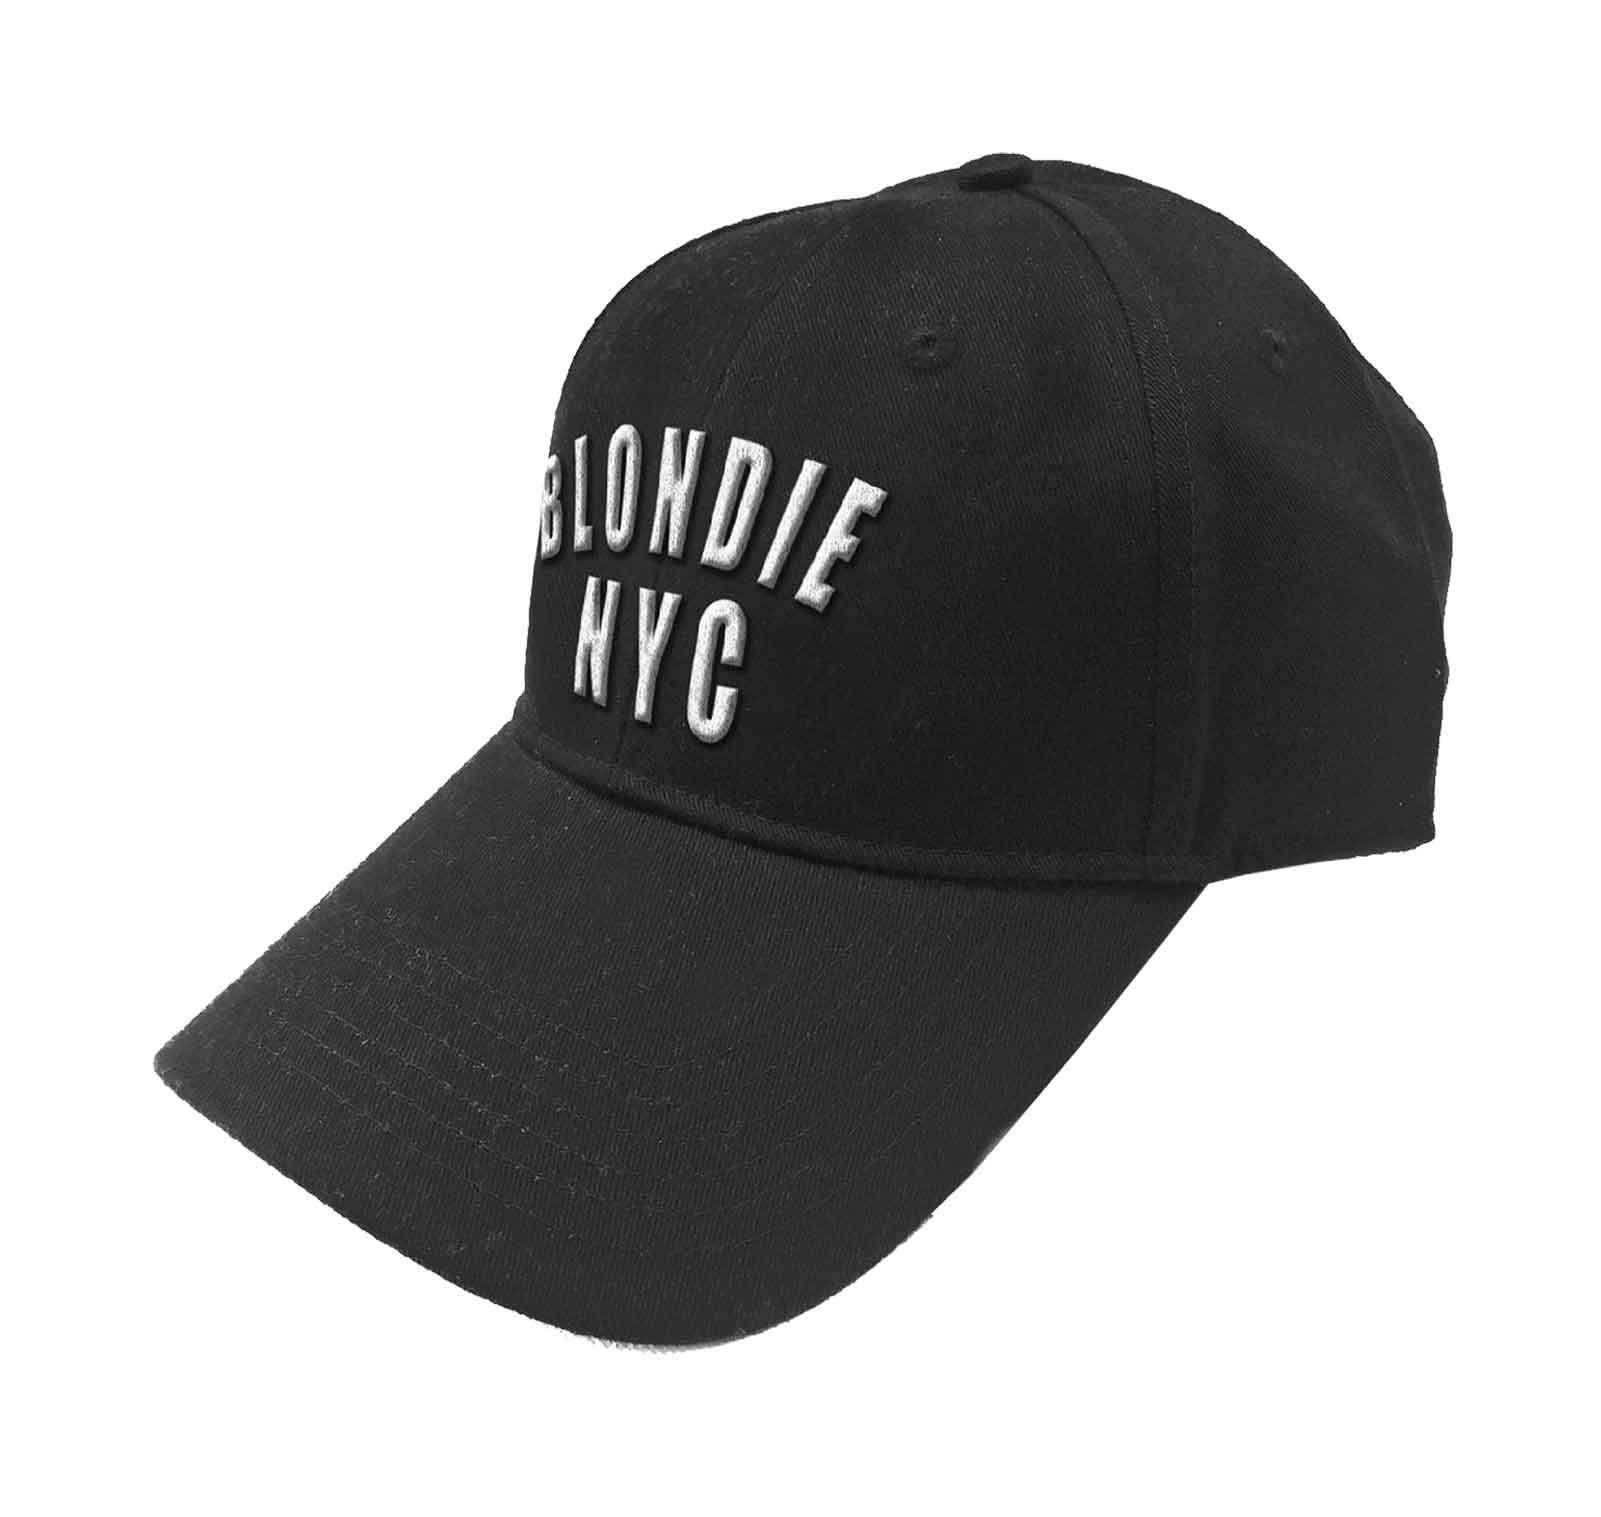 Бейсбольная кепка с логотипом NYC Band и ремешком на спине Blondie, черный бейсбольная кепка с логотипом sunrise band и ремешком на спине queen черный